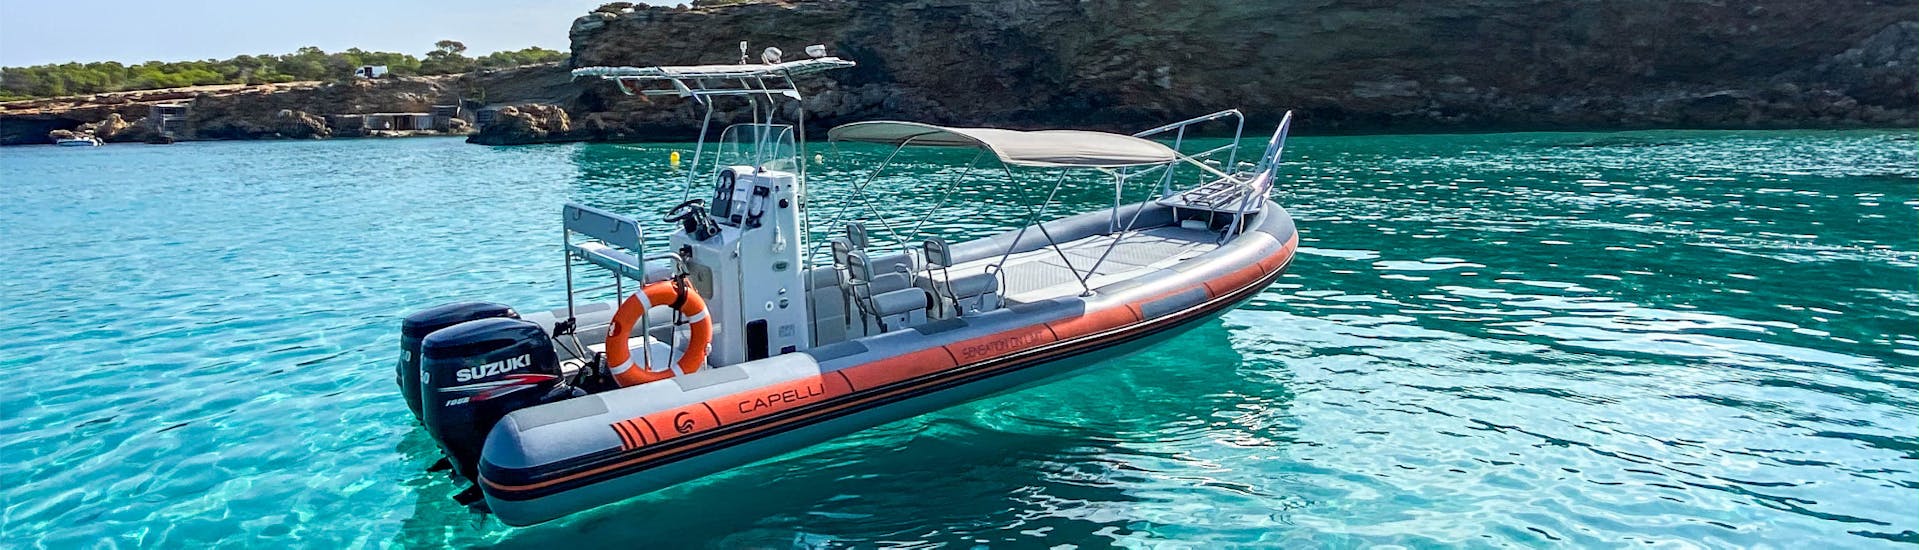 Barco para alquilar en Ibiza con Es Vedra Charter Ibiza con licencia hasta 12 personas.